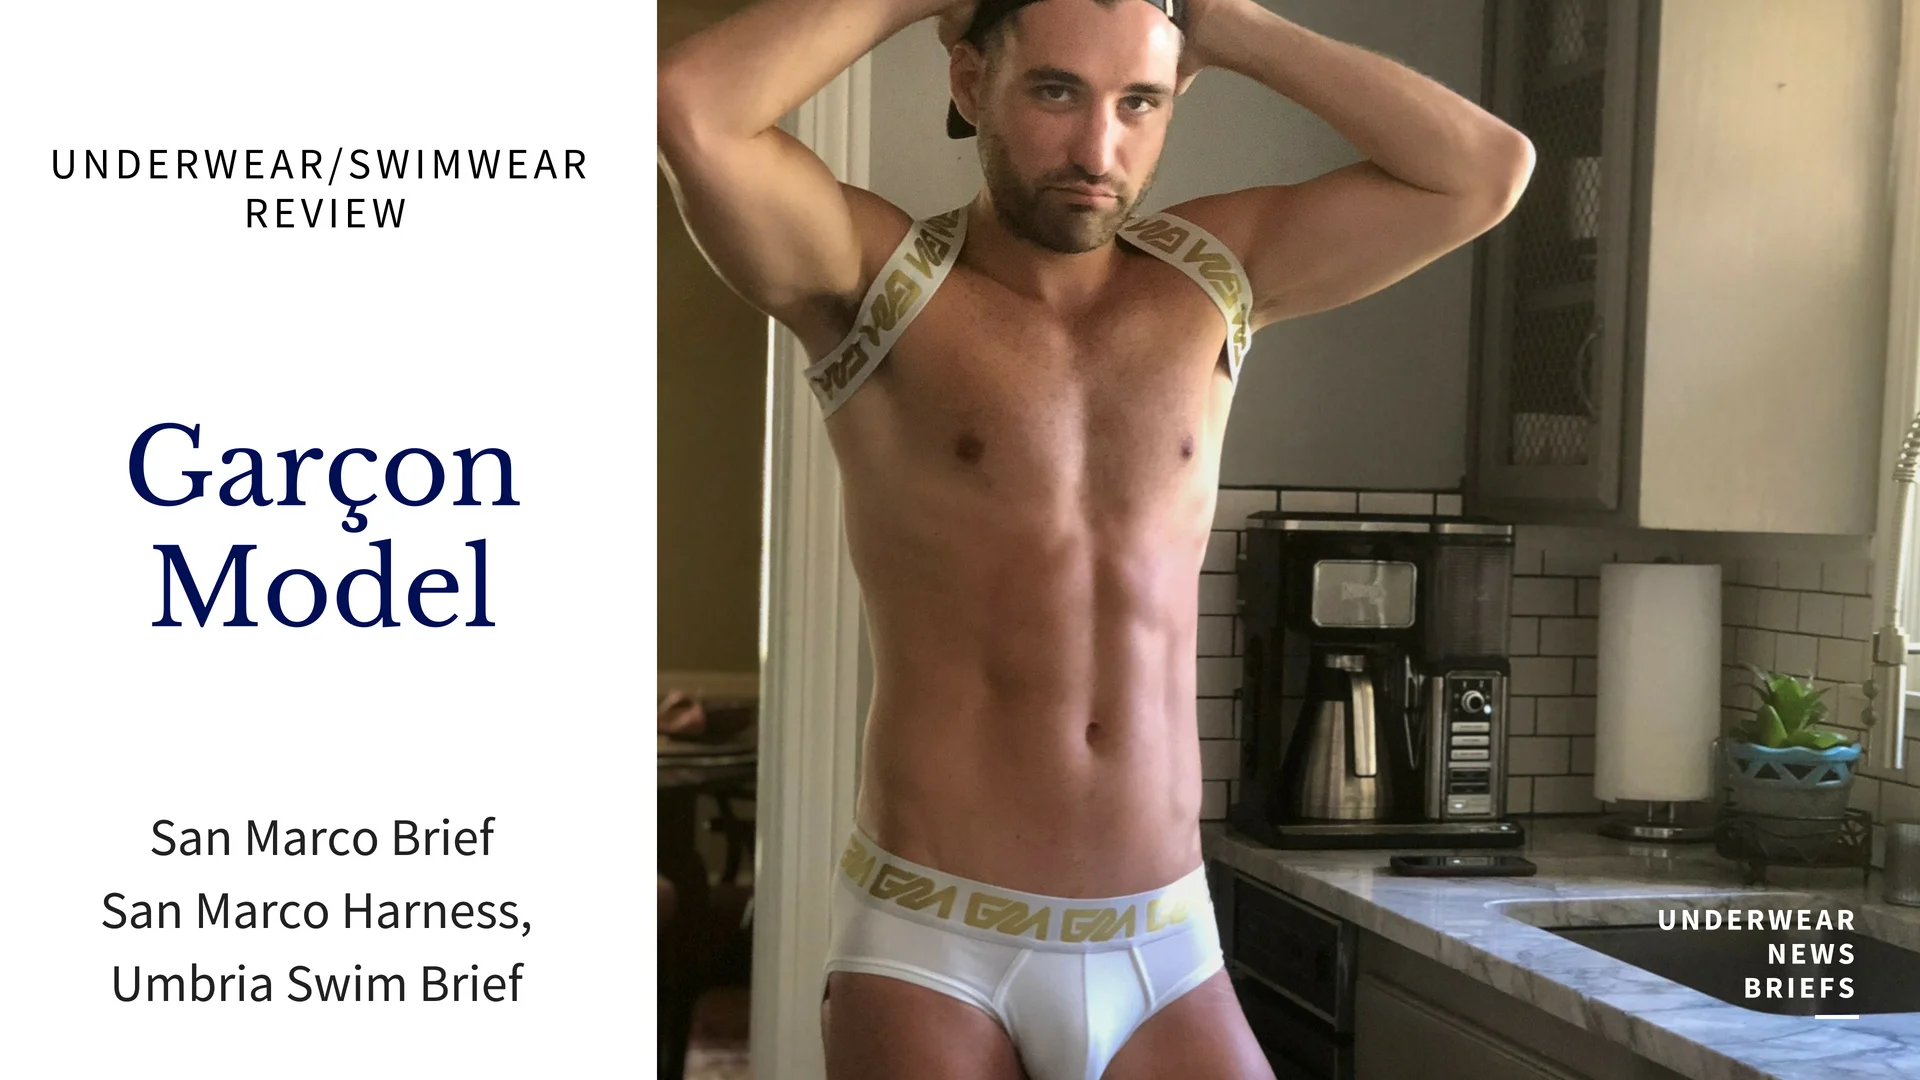 Men's Underwear Video Review - Garcon Model San Marco Brief